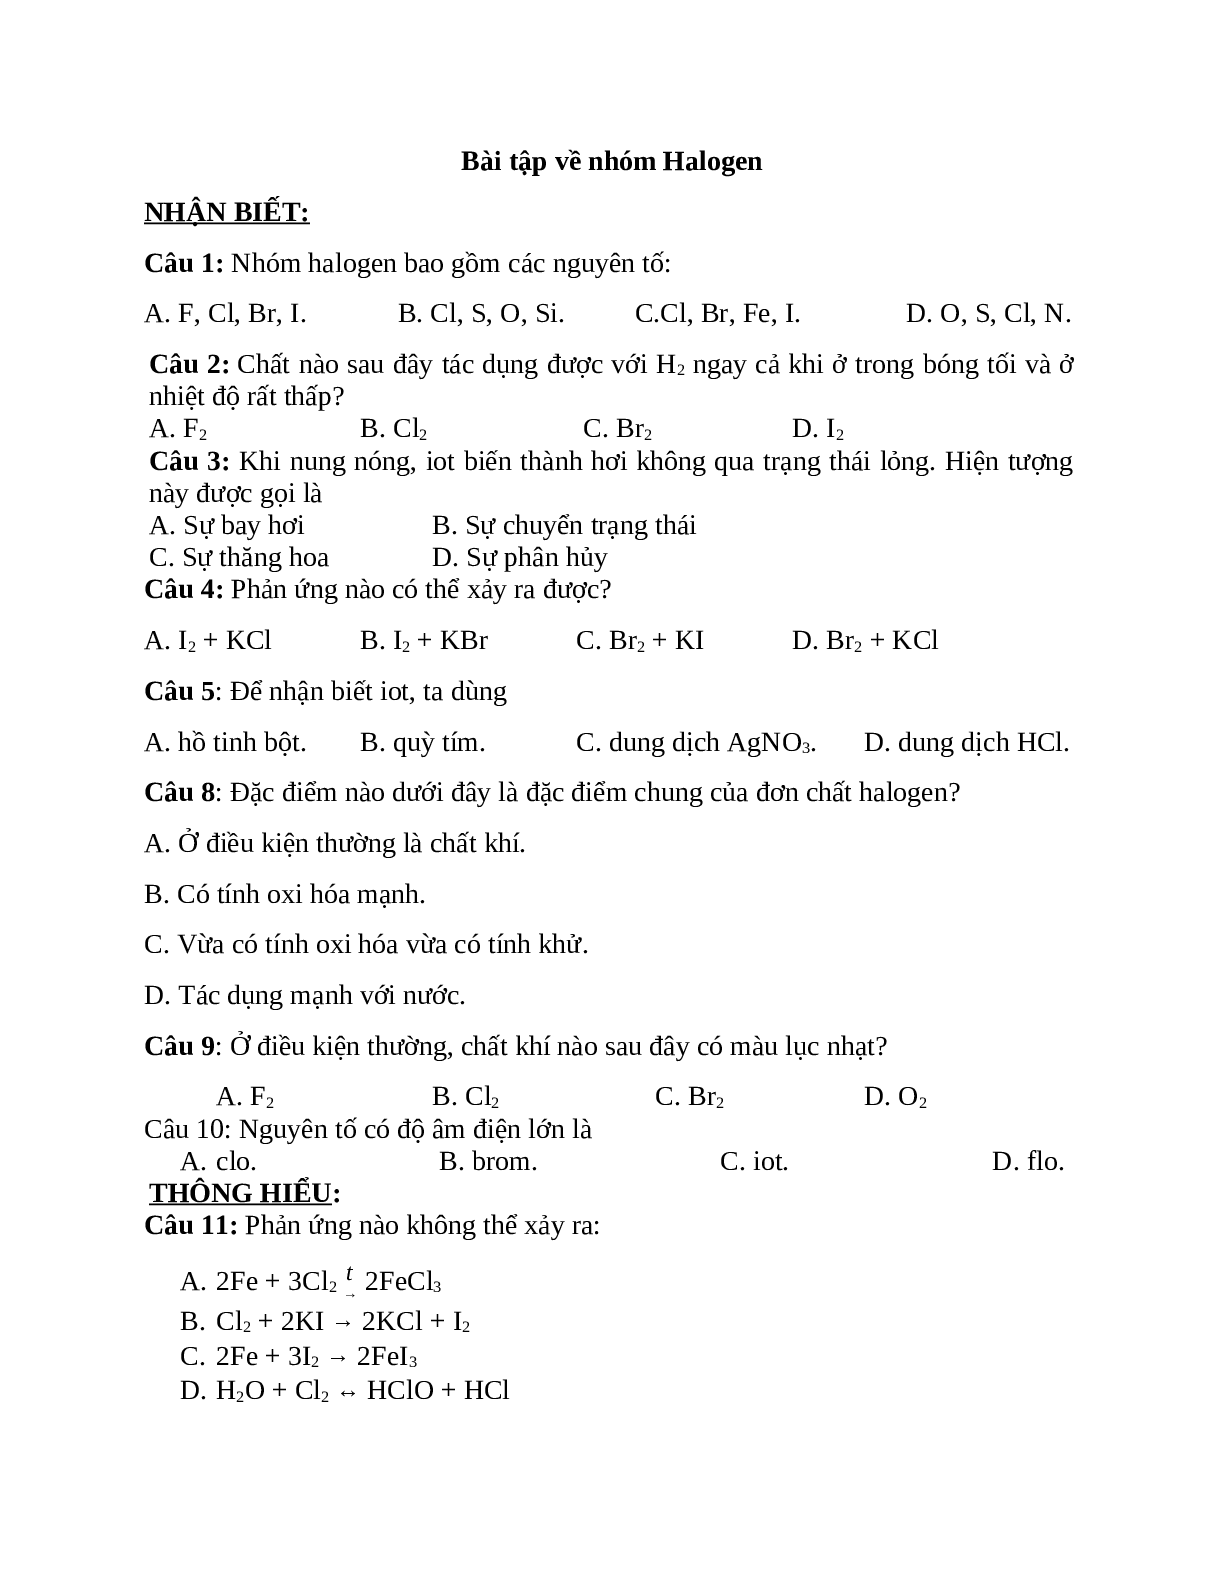 20 câu trắc nghiệm chuyên đề nhóm Halogen (đề 2) (trang 1)